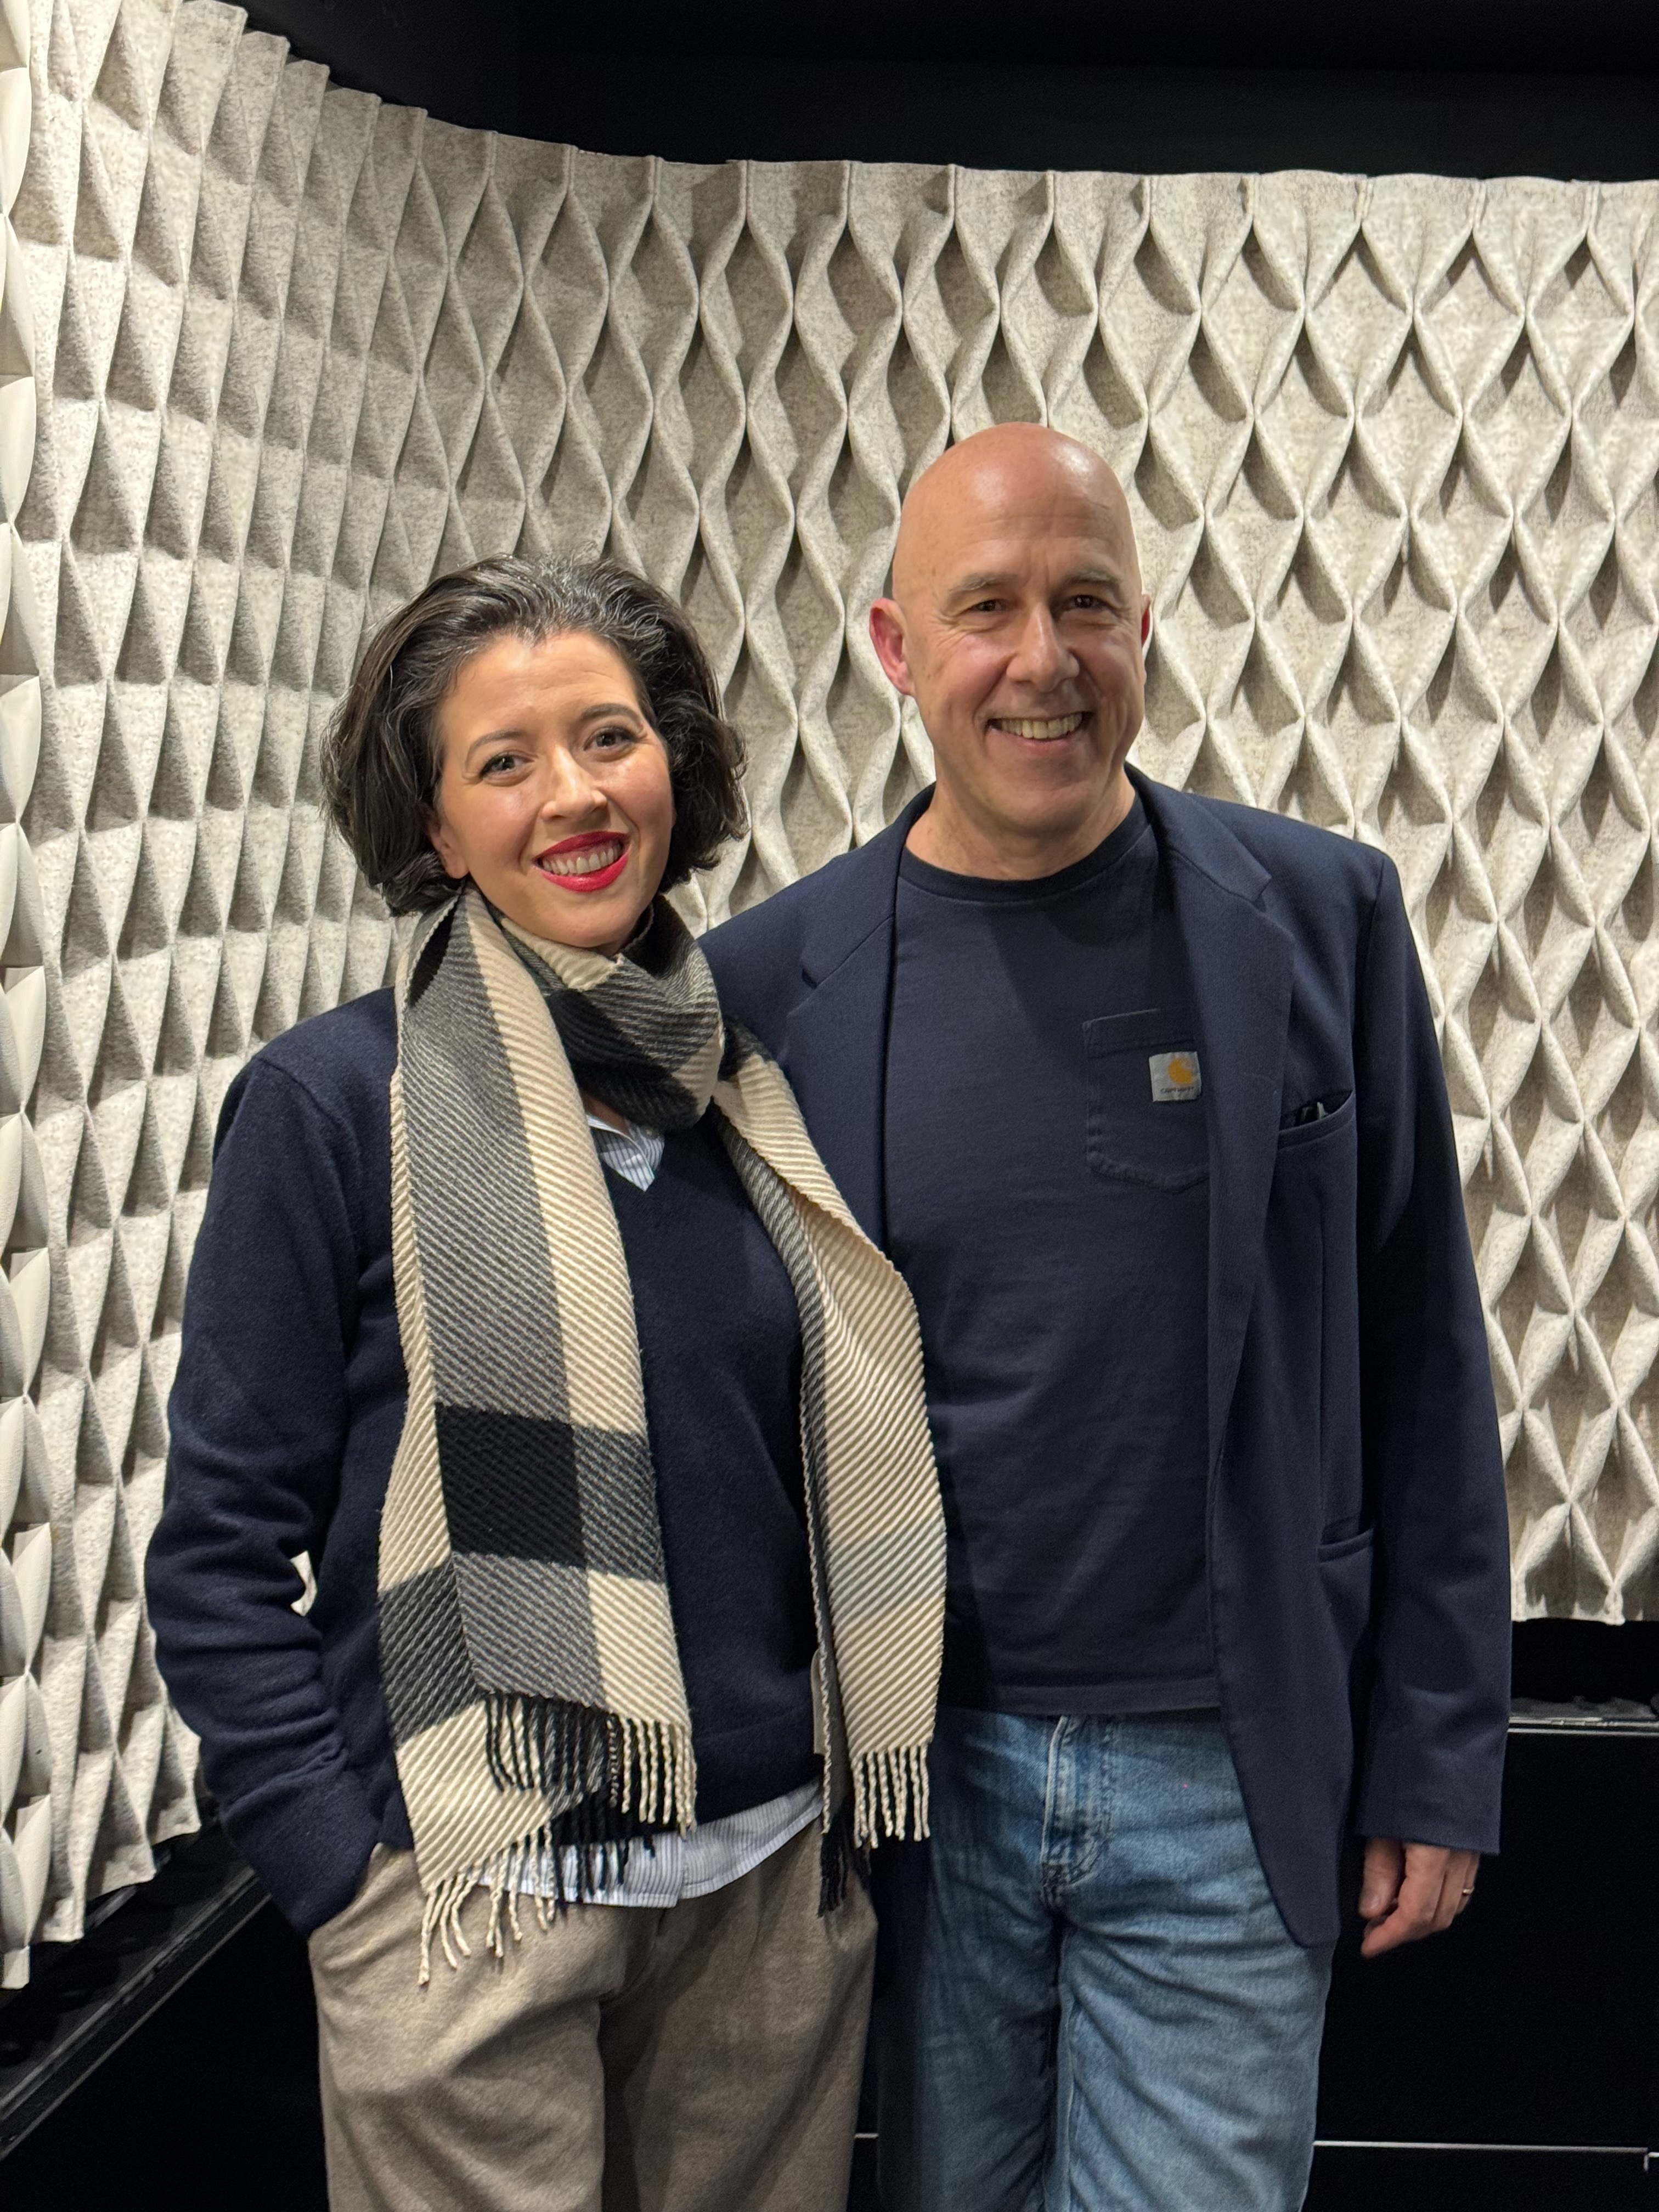 Lisette Oropesa and Arnaud Laporte at Radio France